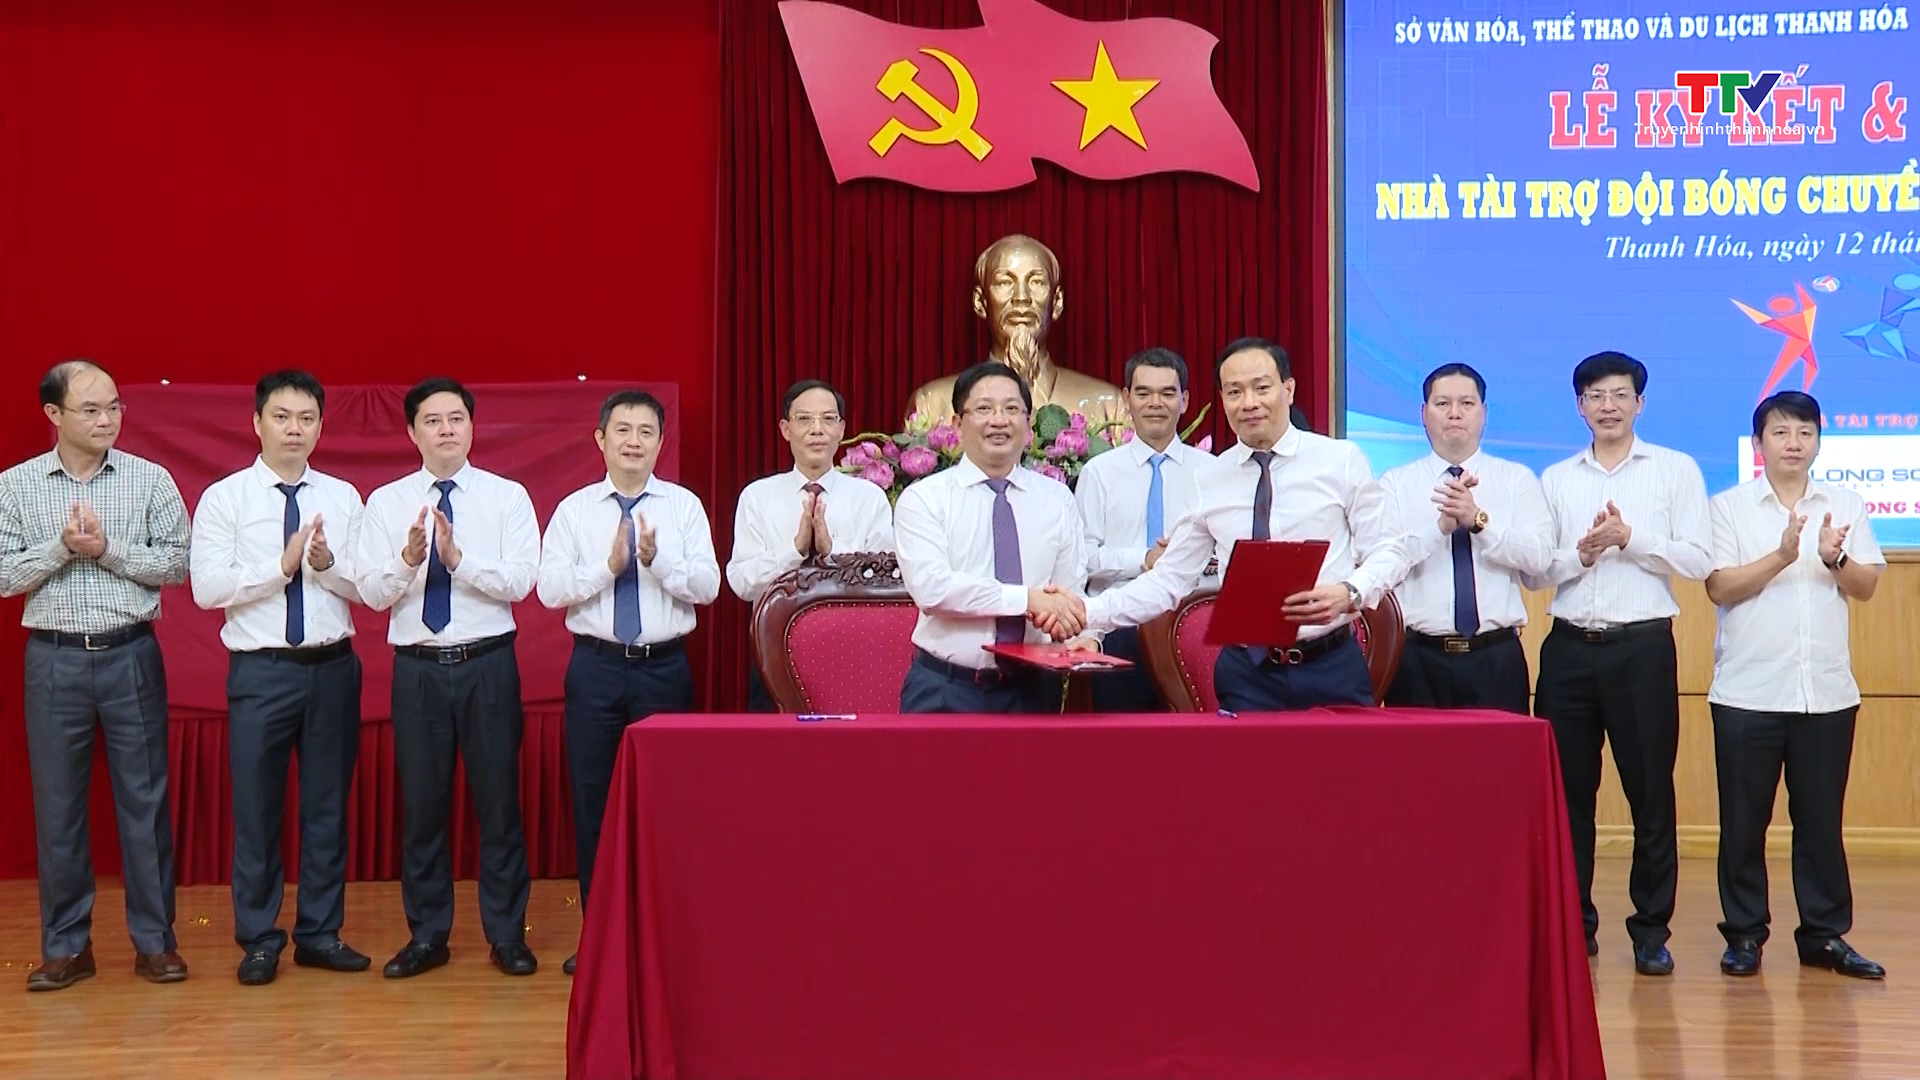 Ký kết tài trợ và ra mắt đội bóng chuyền nữ Xi măng Long Sơn Thanh Hóa - Ảnh 3.